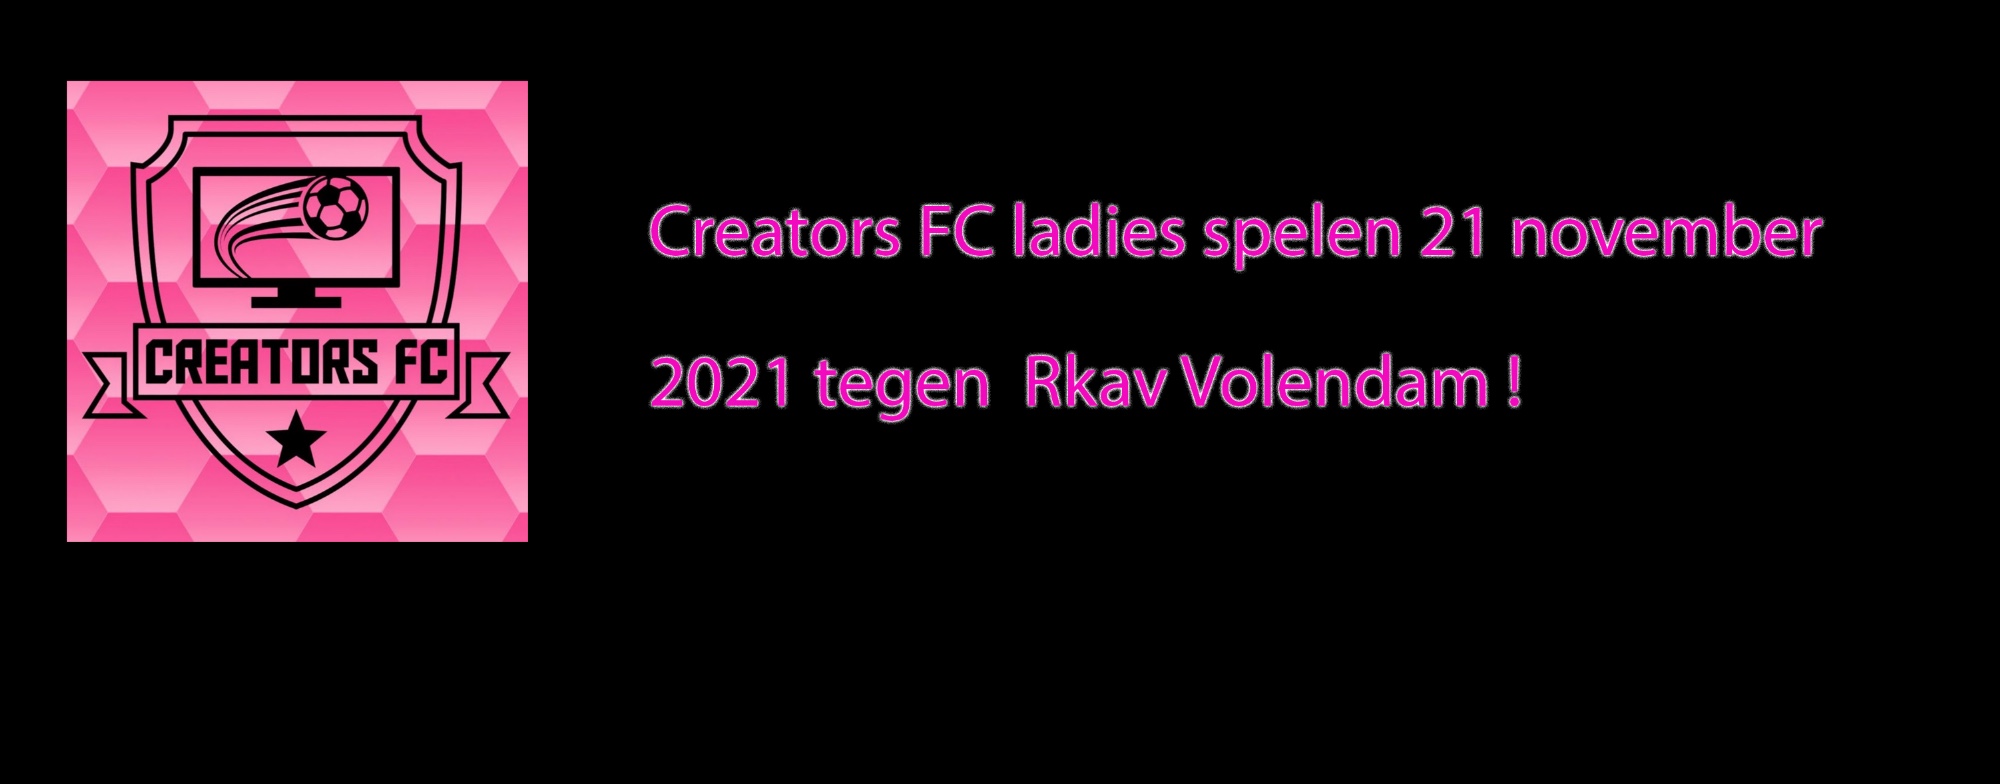 CREATORS FC LADIES SPELEN 21 NOVEMBER 2021 TEGEN RKAV VOLENDAM